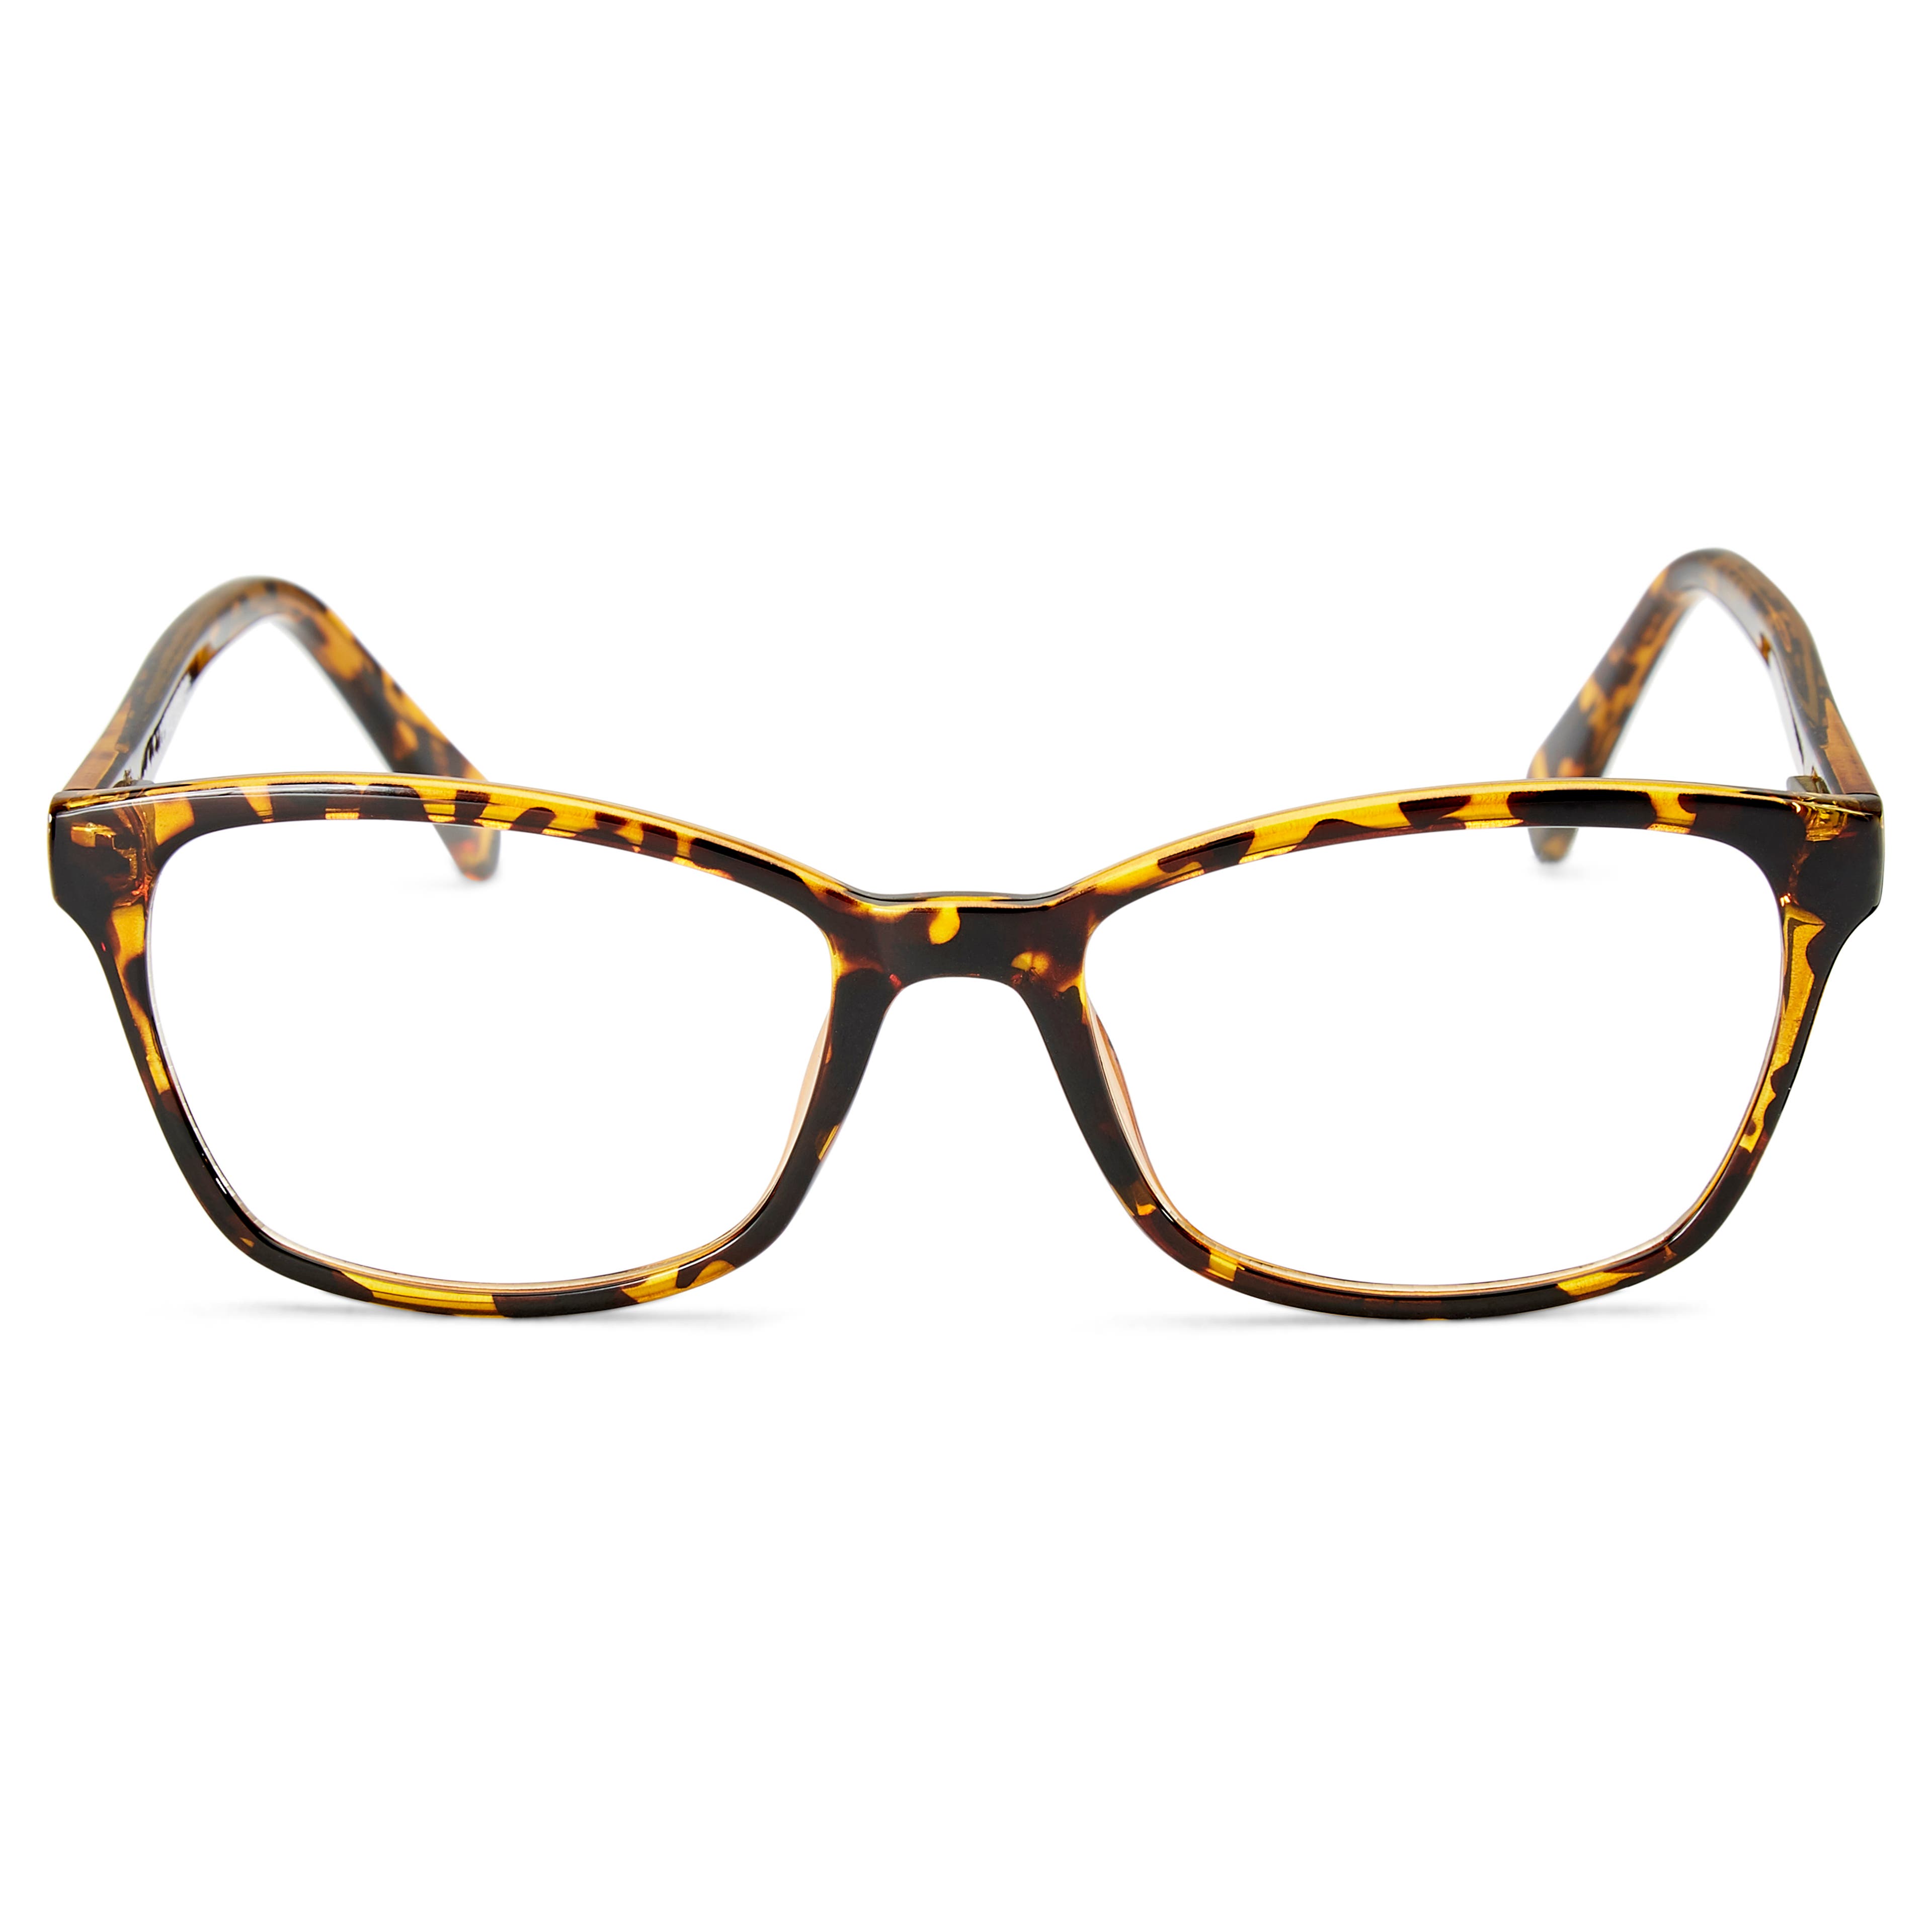 Faculty brýle s obroučkami s želvovinovým vzorem